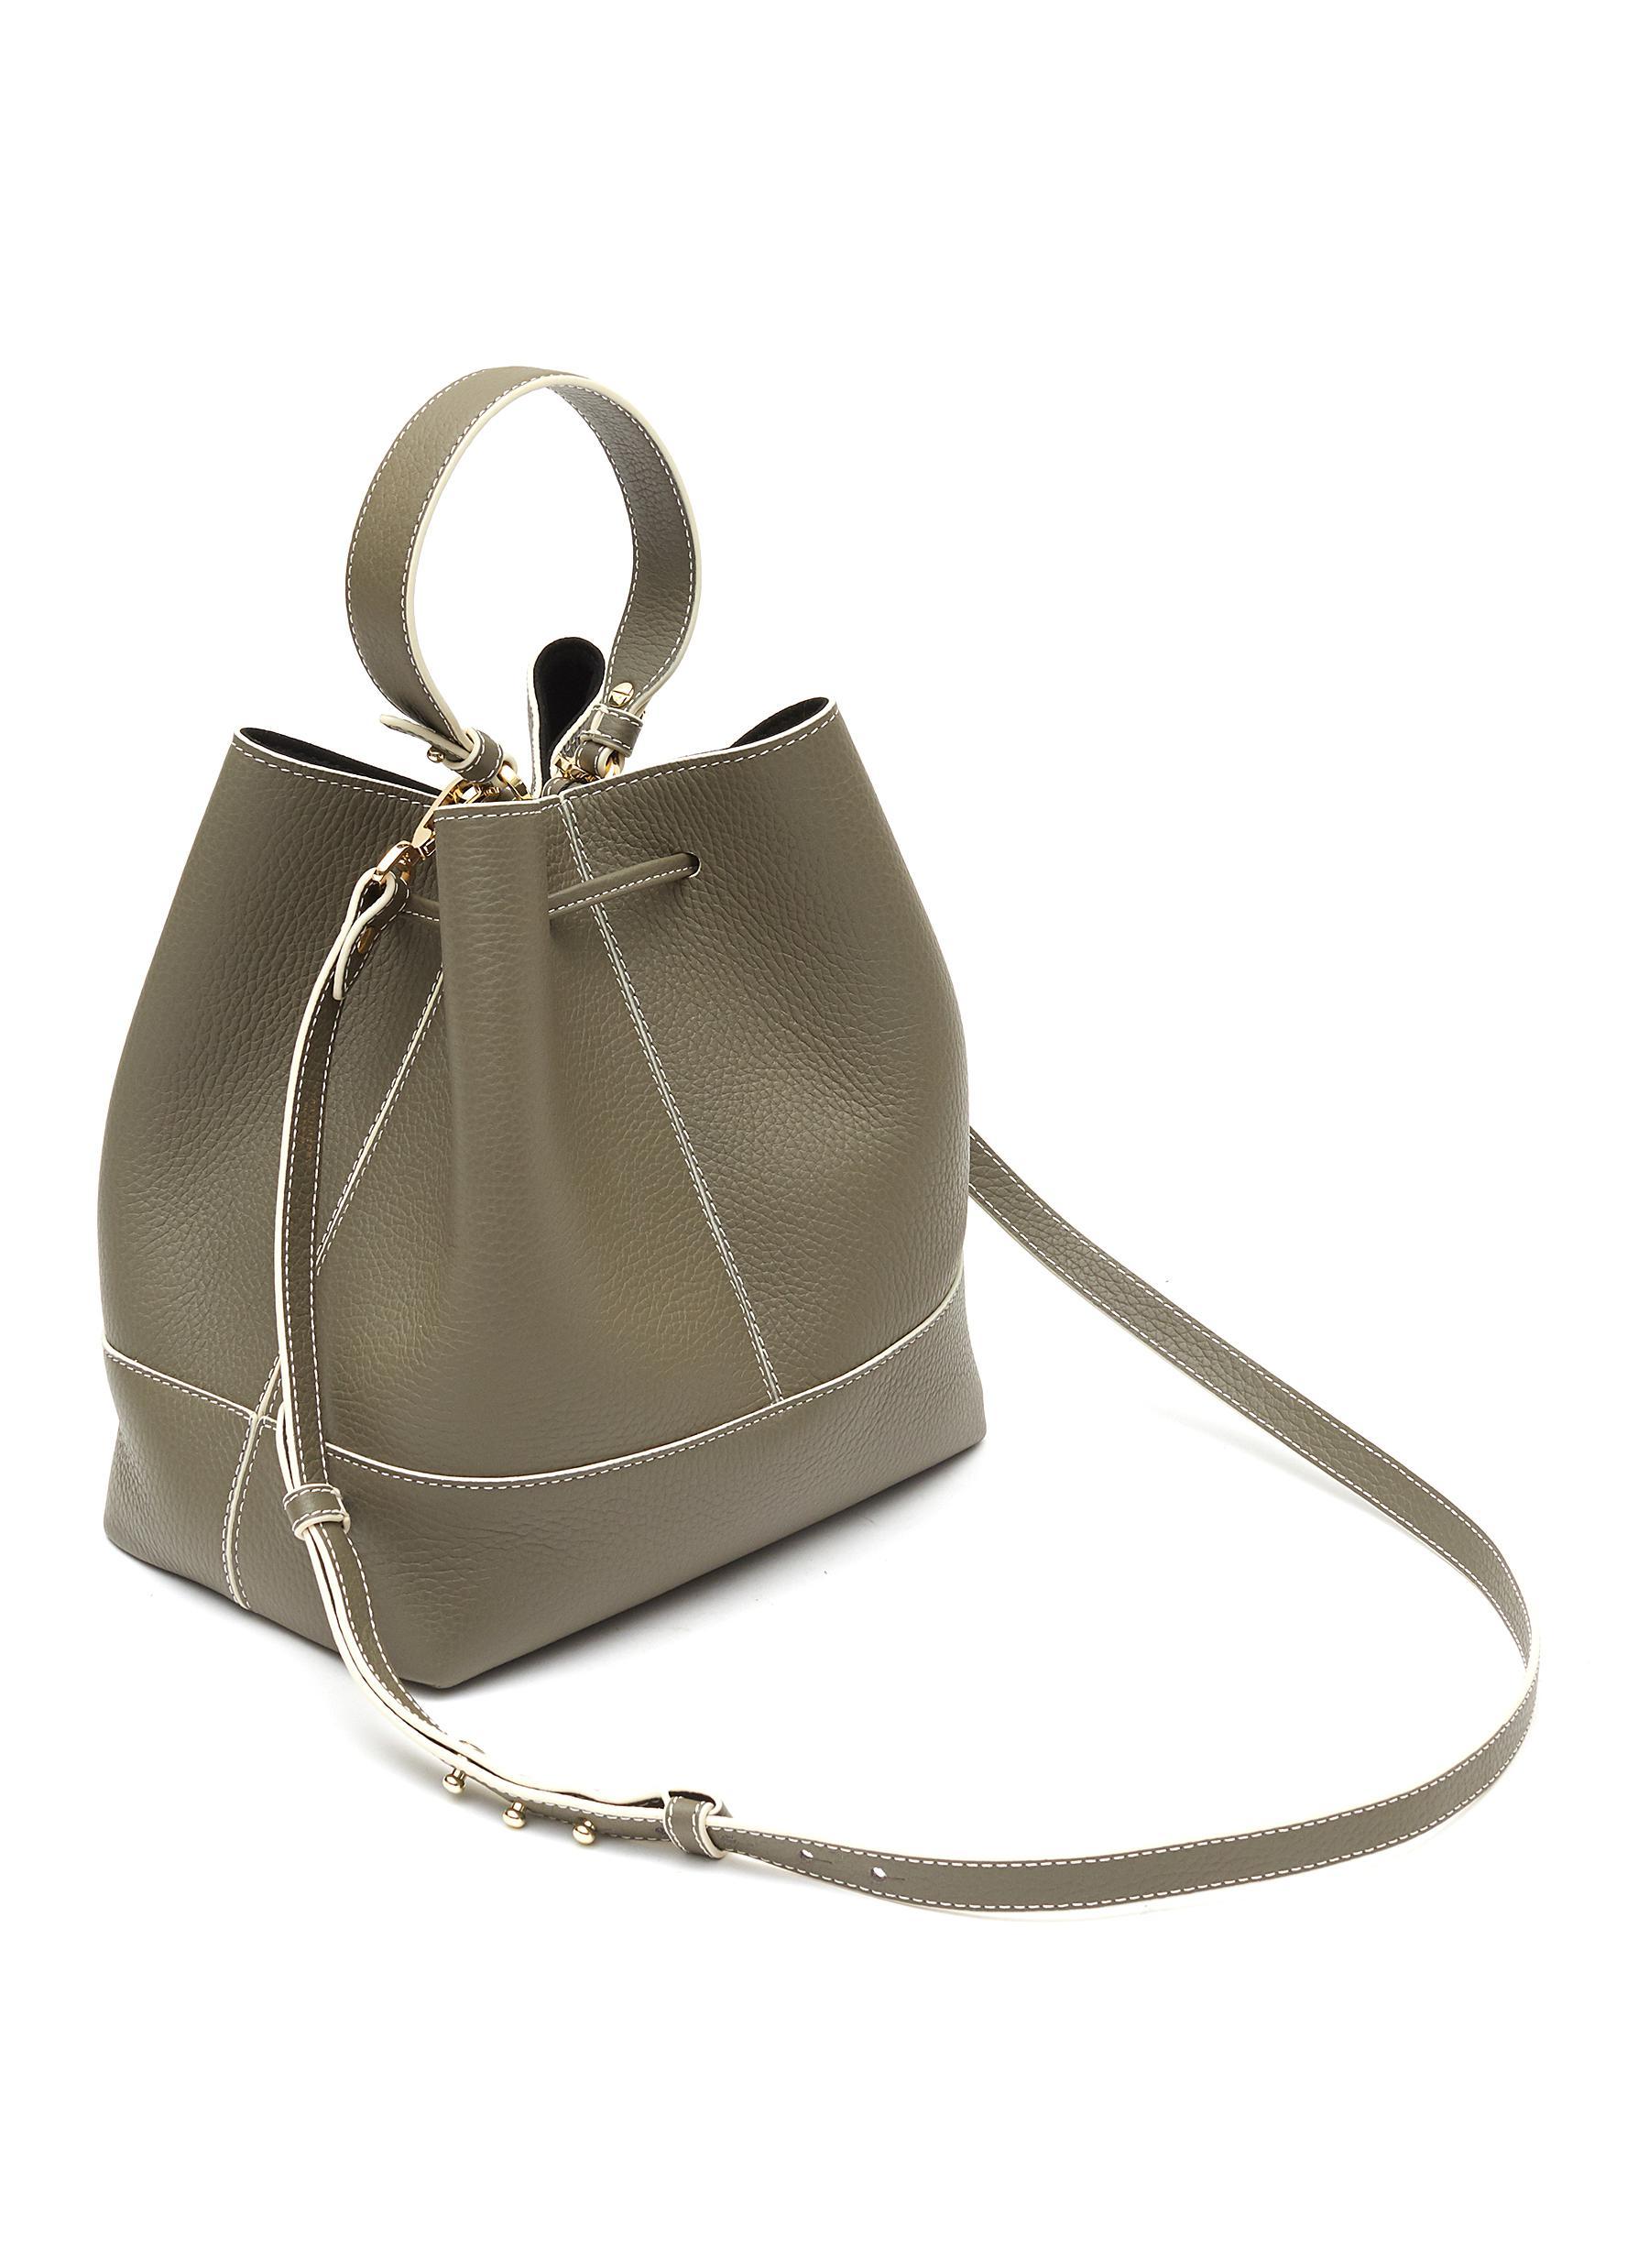 Strathberry Lana Osette Midi Bucket Bag for Women